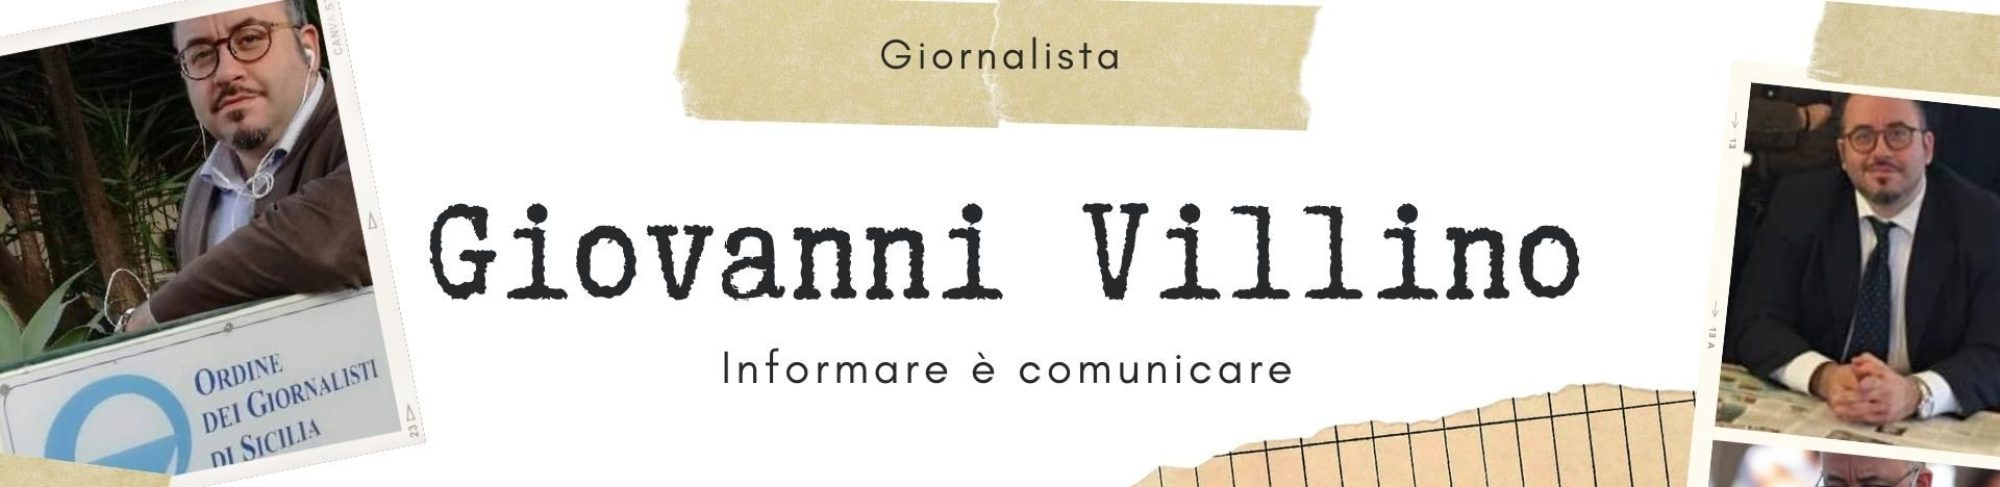 Giovanni Villino